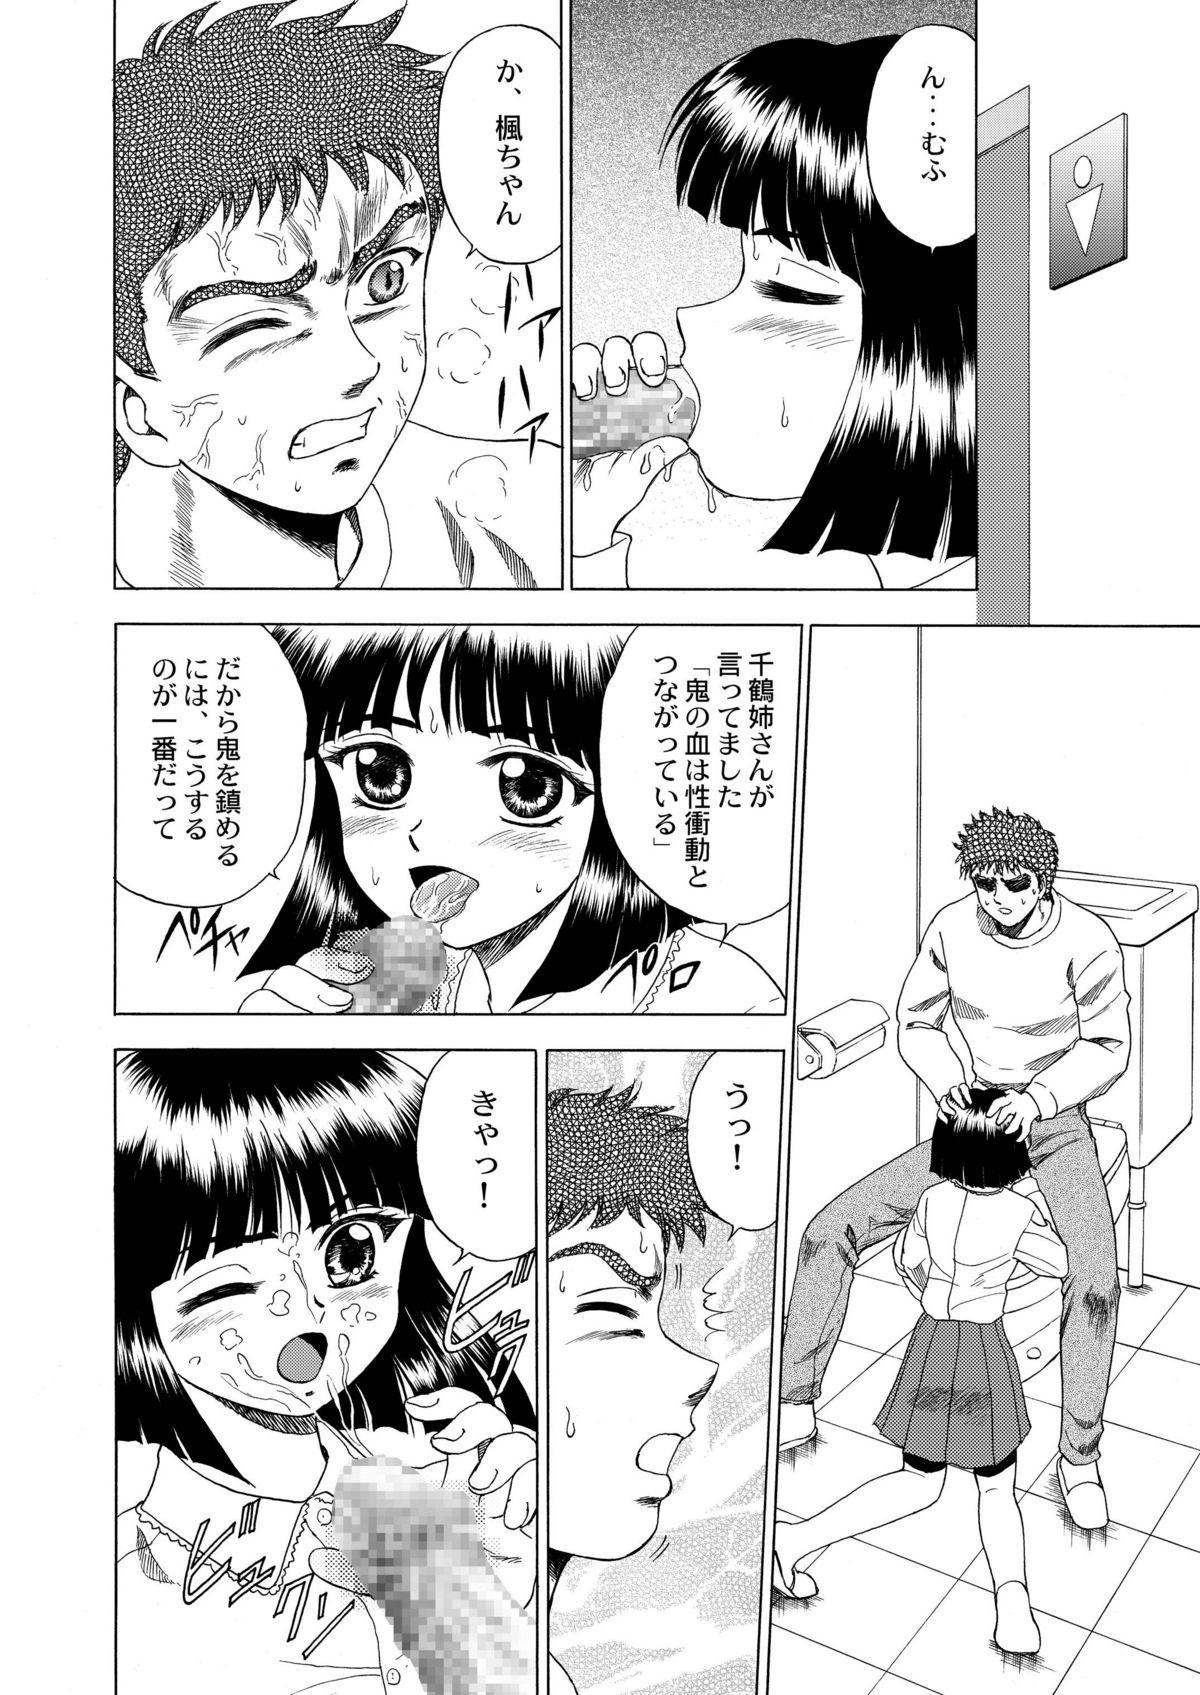 Pasivo Gekkouki Dai ni Yoru - Tsukihime Kizuato Cuckold - Page 11